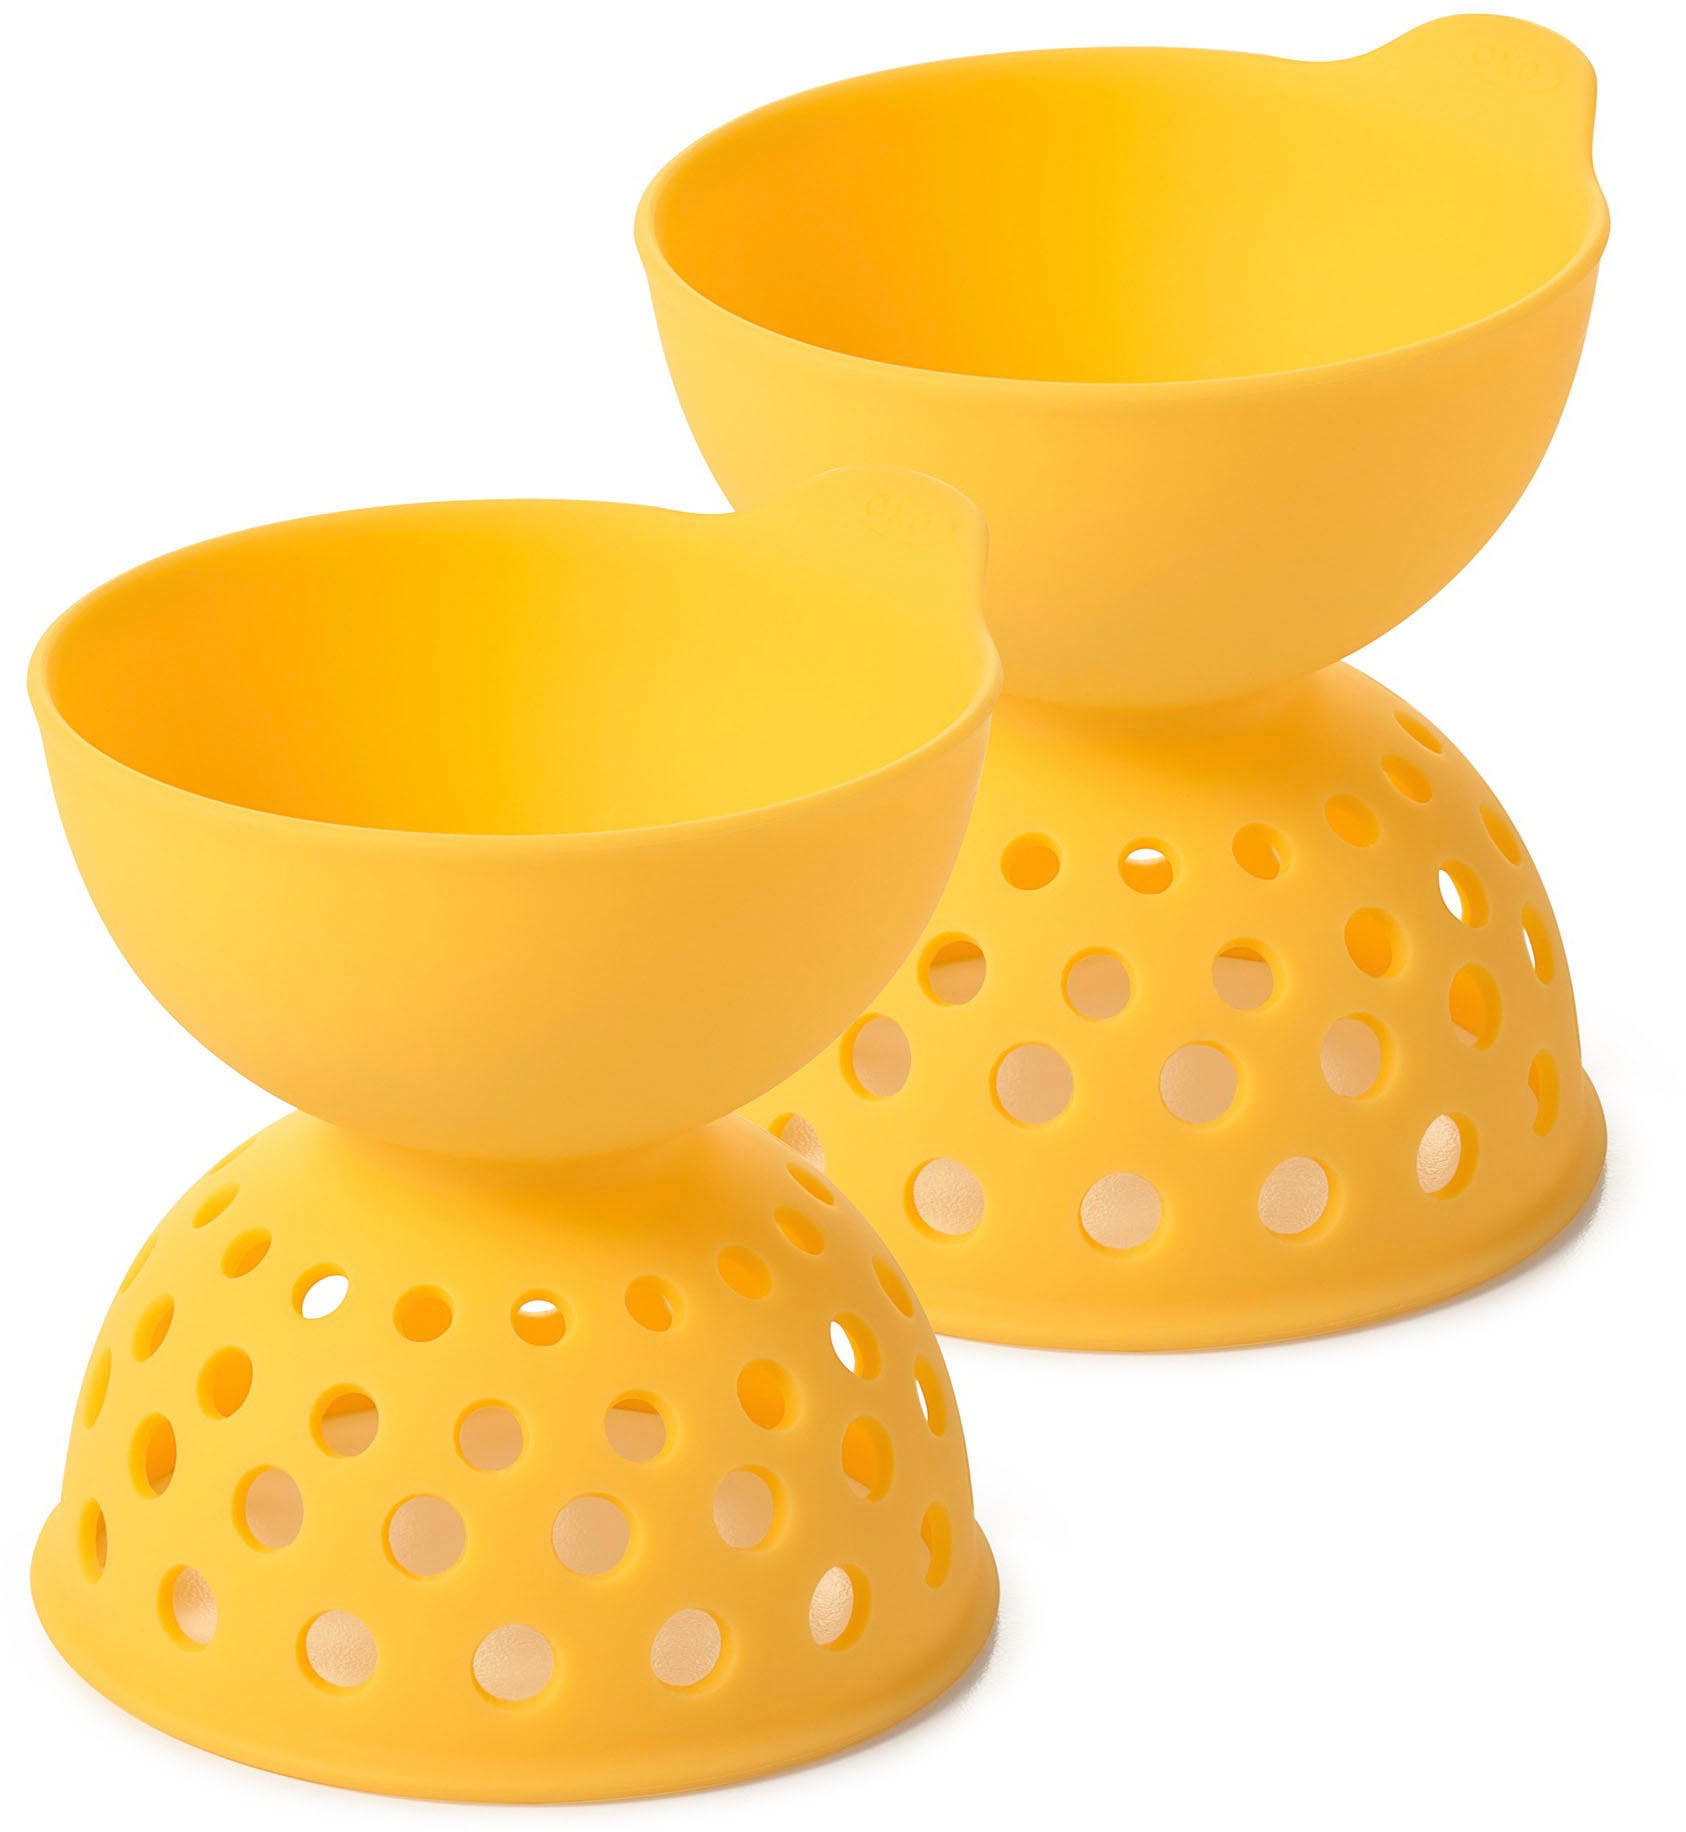 Preisvergleich für OXO Good Grips Eier-Pochierer, (Set, 2 St.), Silikon –  perfekt pochierte Eier, in der Farbe Gelb, GTIN: 0719812682259 | Ladendirekt